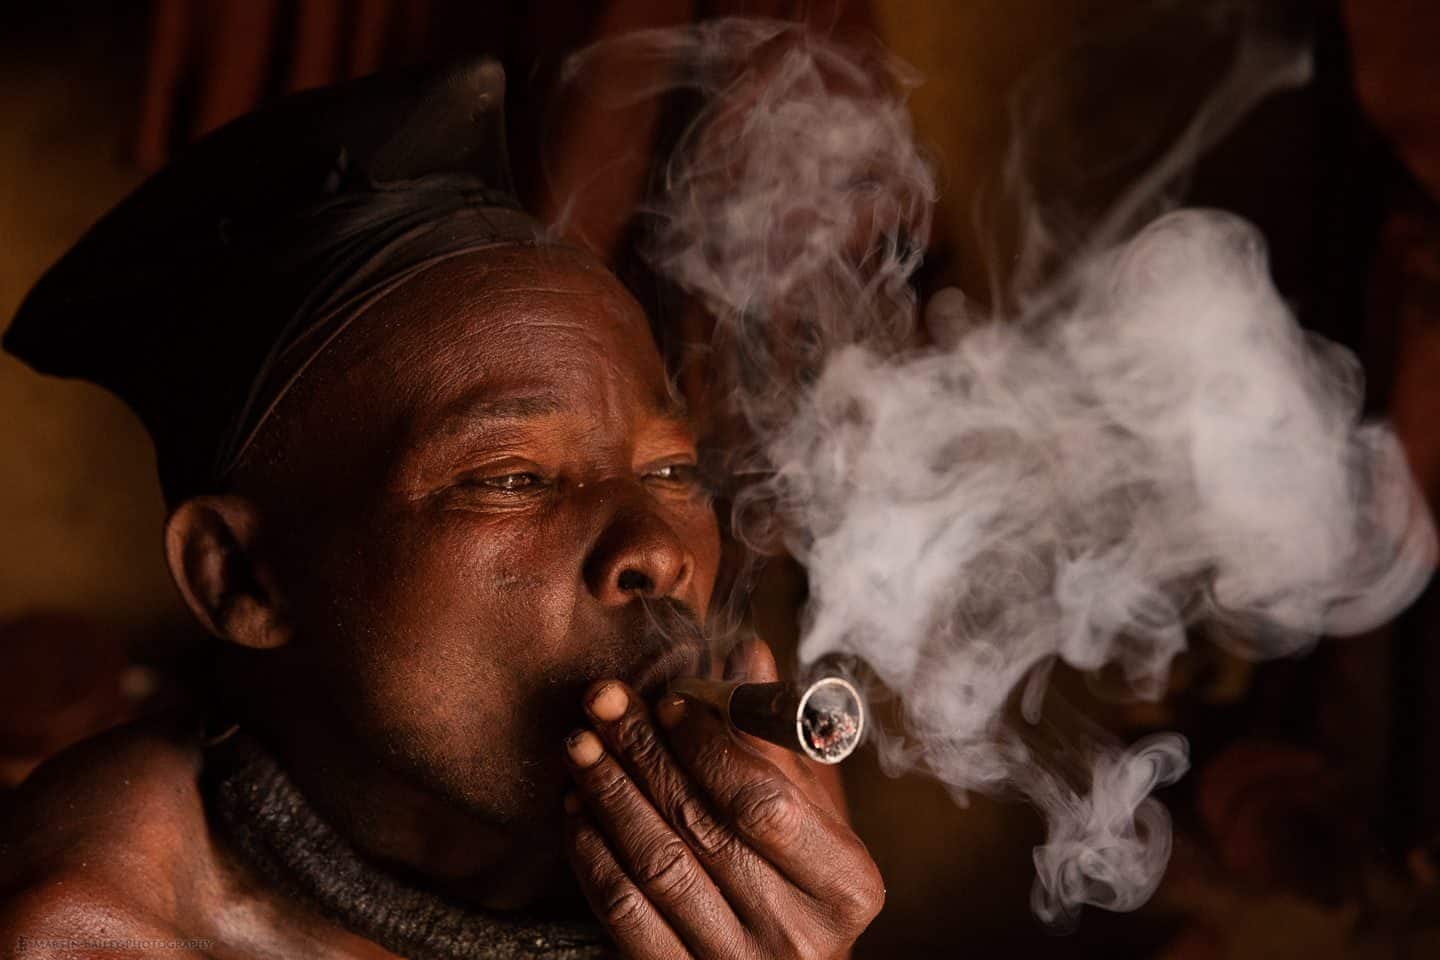 Himba Man "Hidion" Smoking